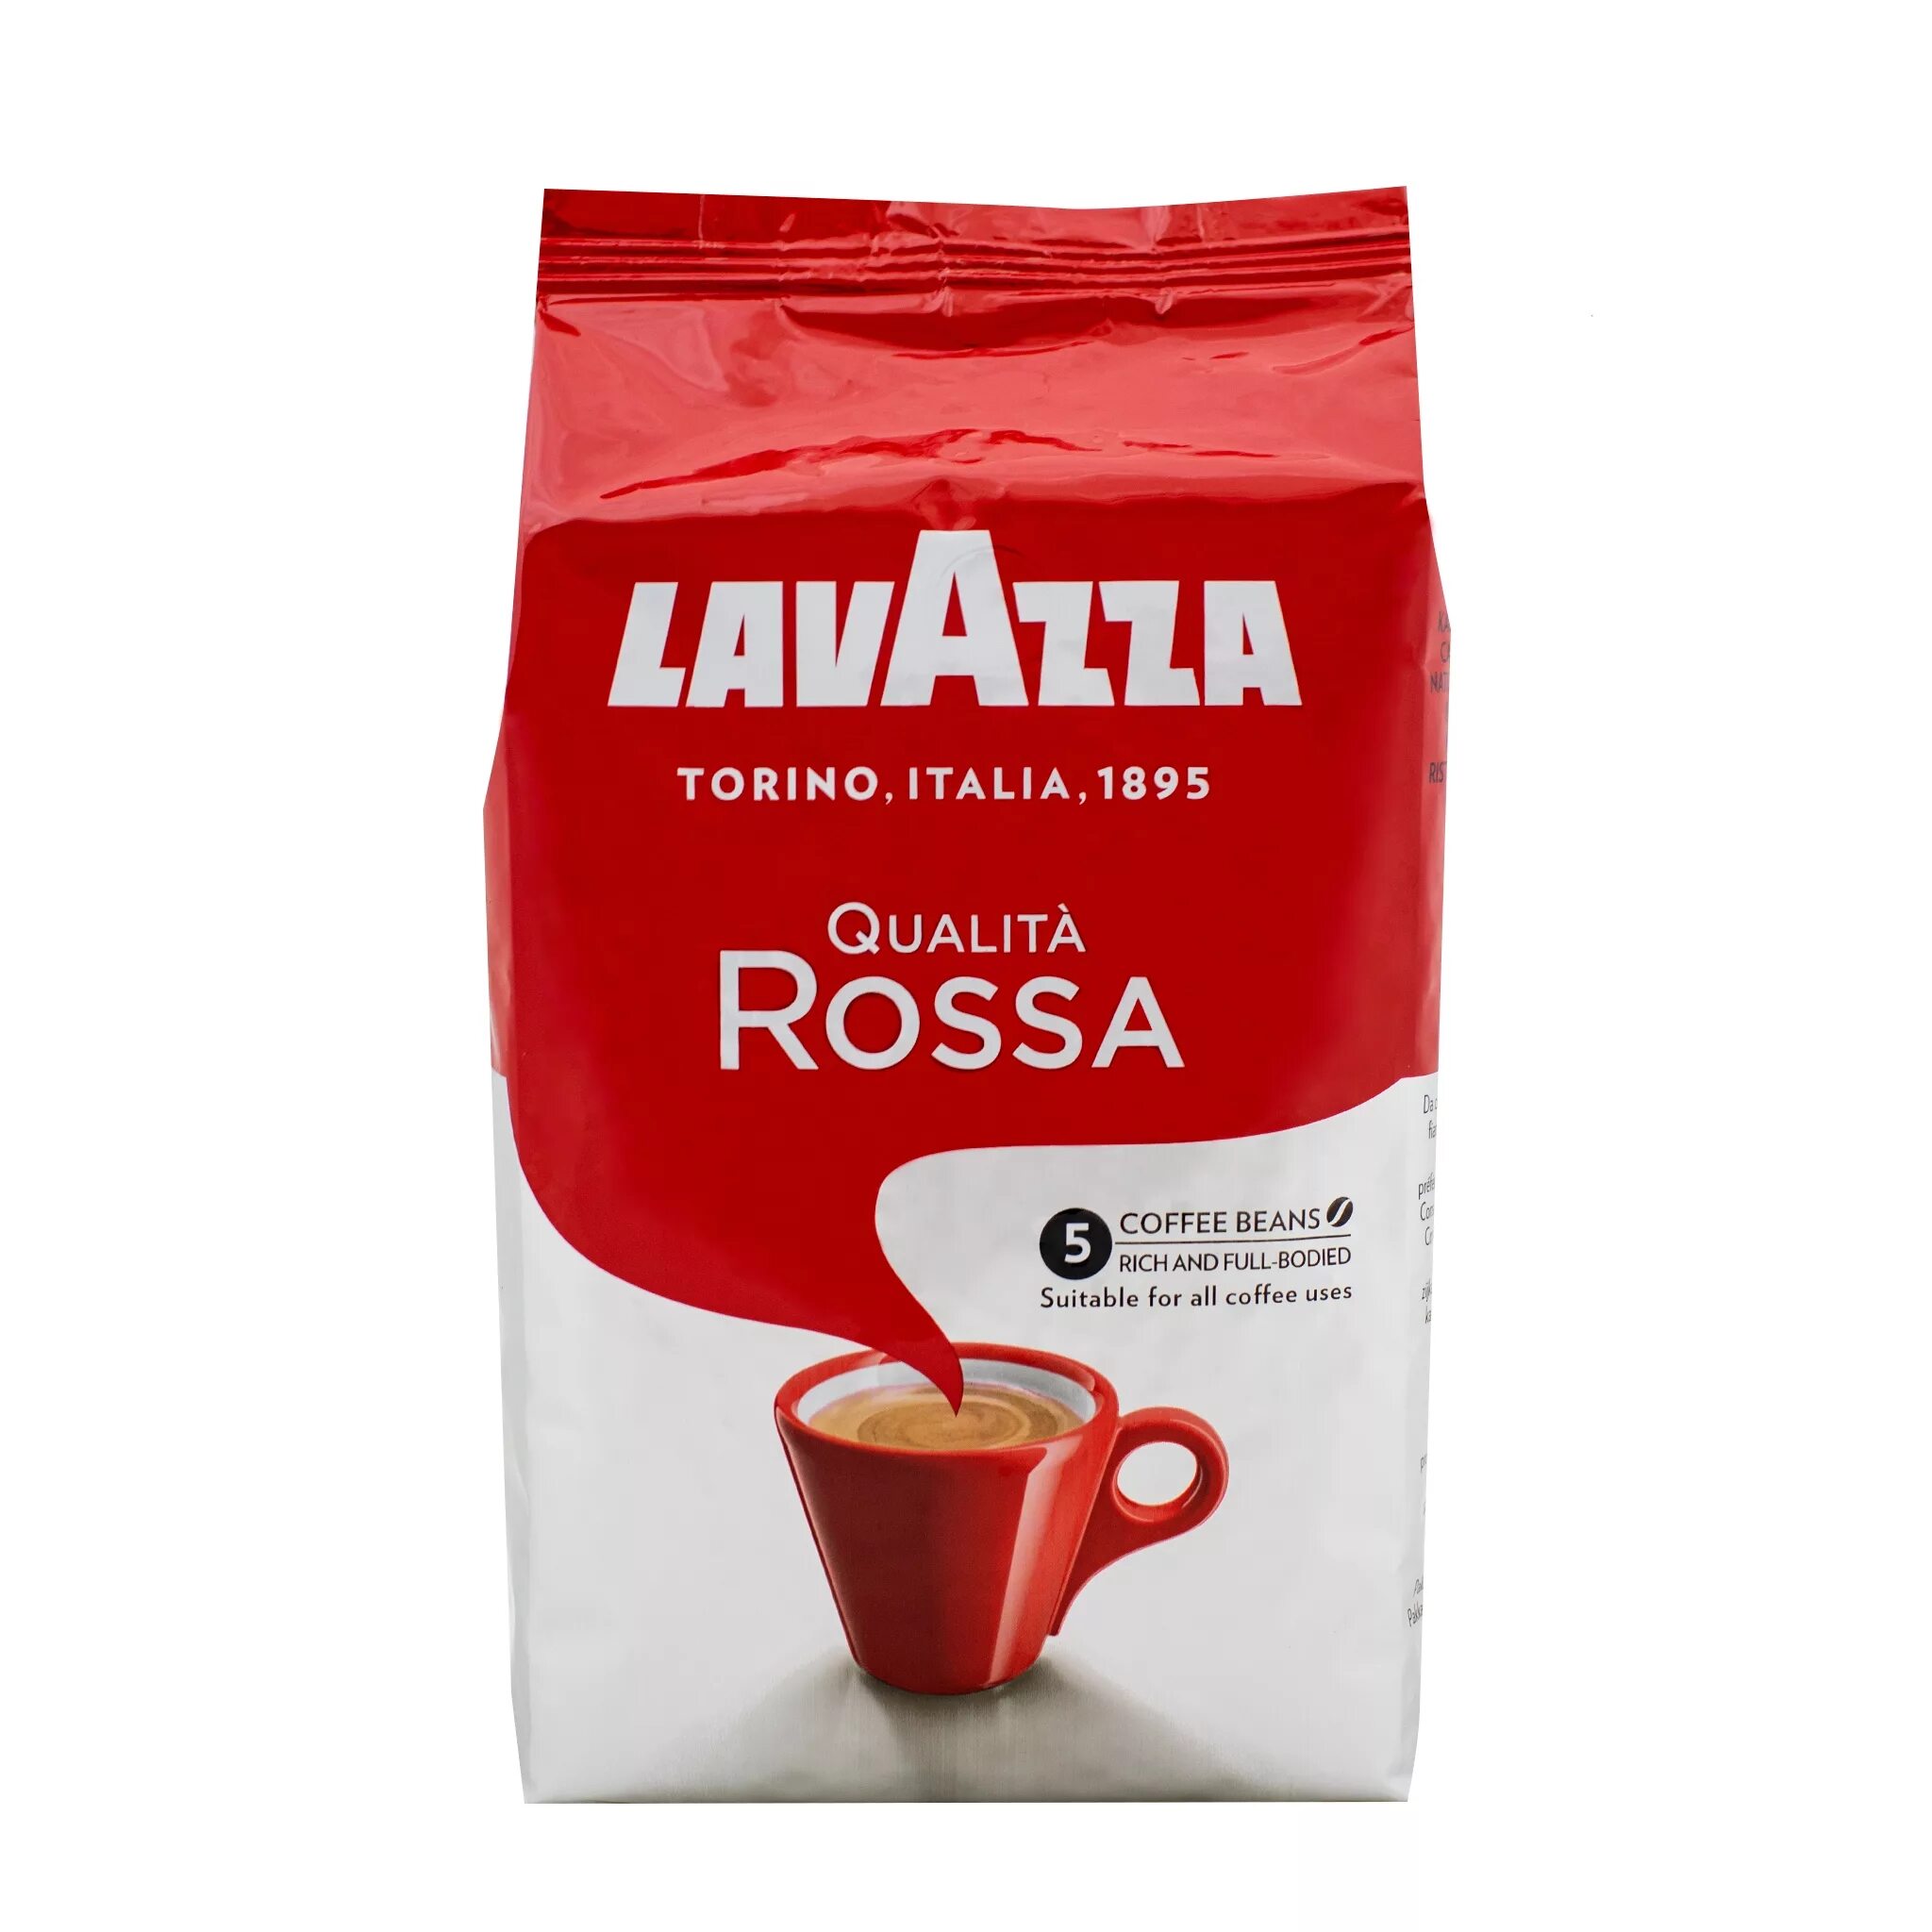 Купить кофе зерно лавацца в москве. Кофе Лавацца Росса молотый. Лавацца Росса в зернах 1 кг. Кофе в зернах Lavazza qualita Rossa. Кофе в зернах Lavazza qualita Rossa, 1 кг.